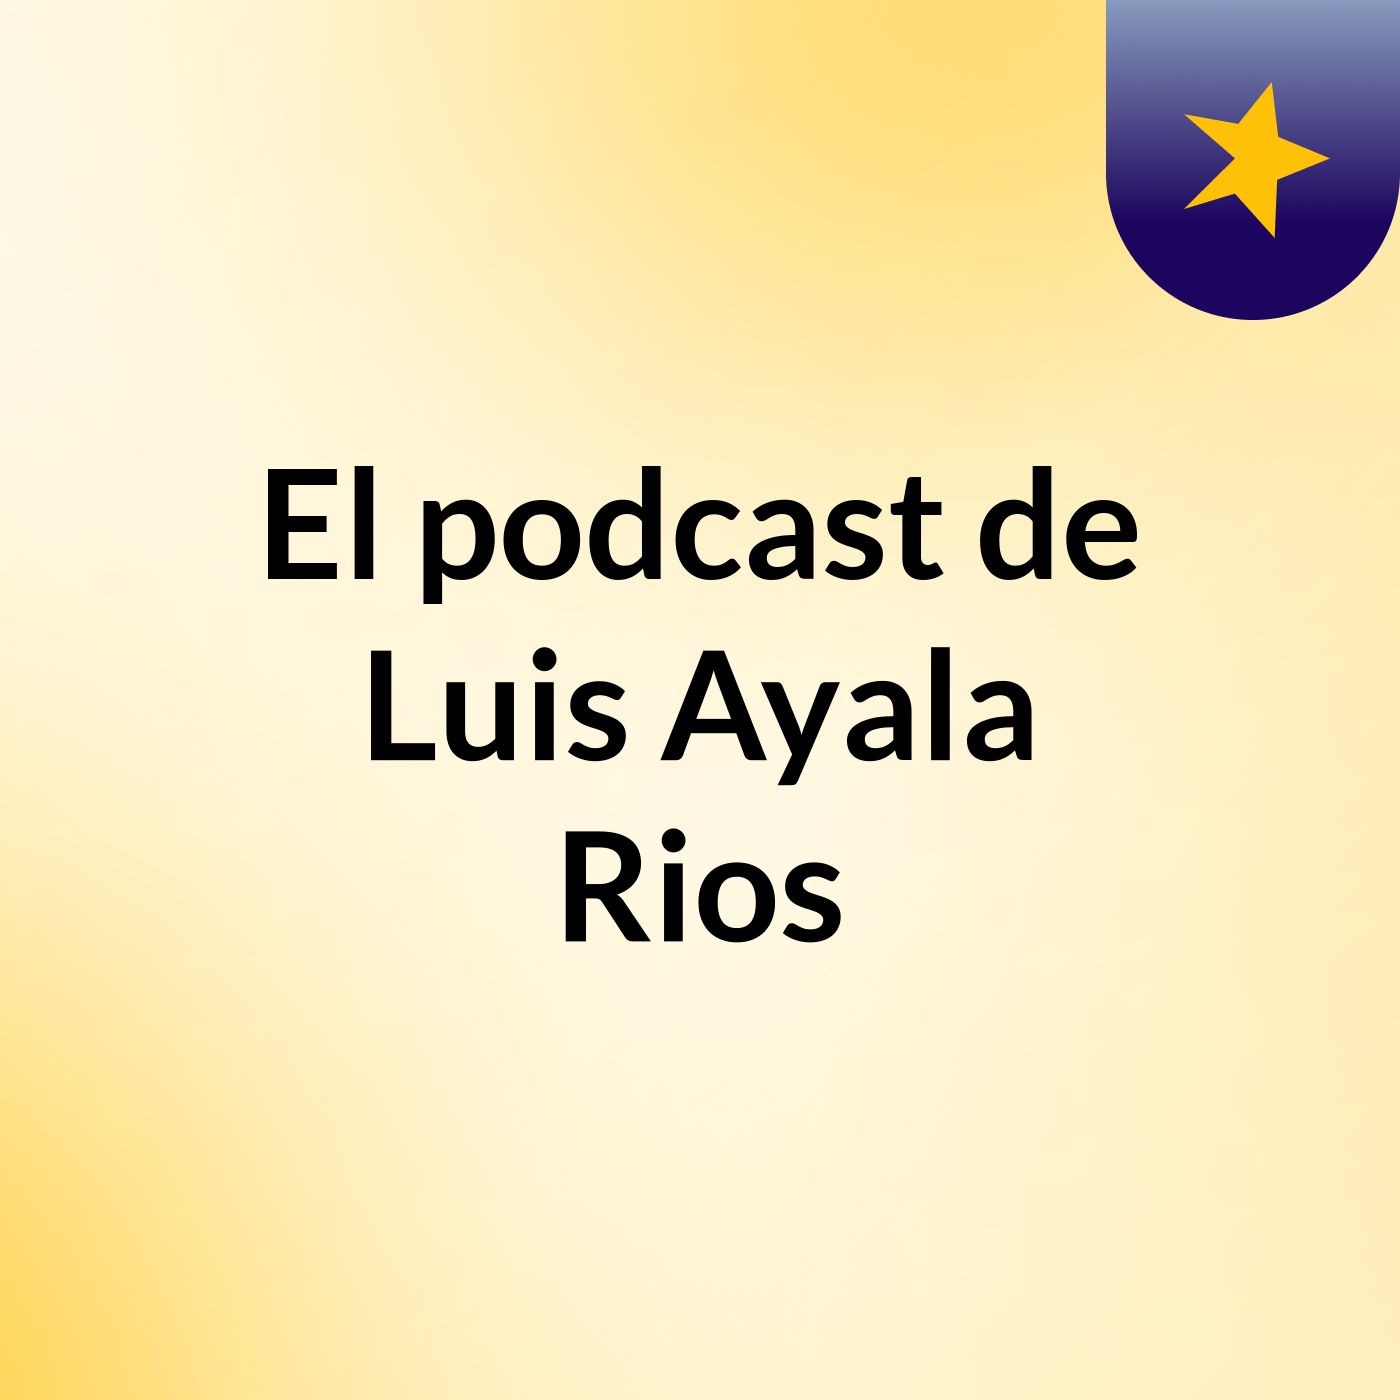 El podcast de Luis Ayala Rios